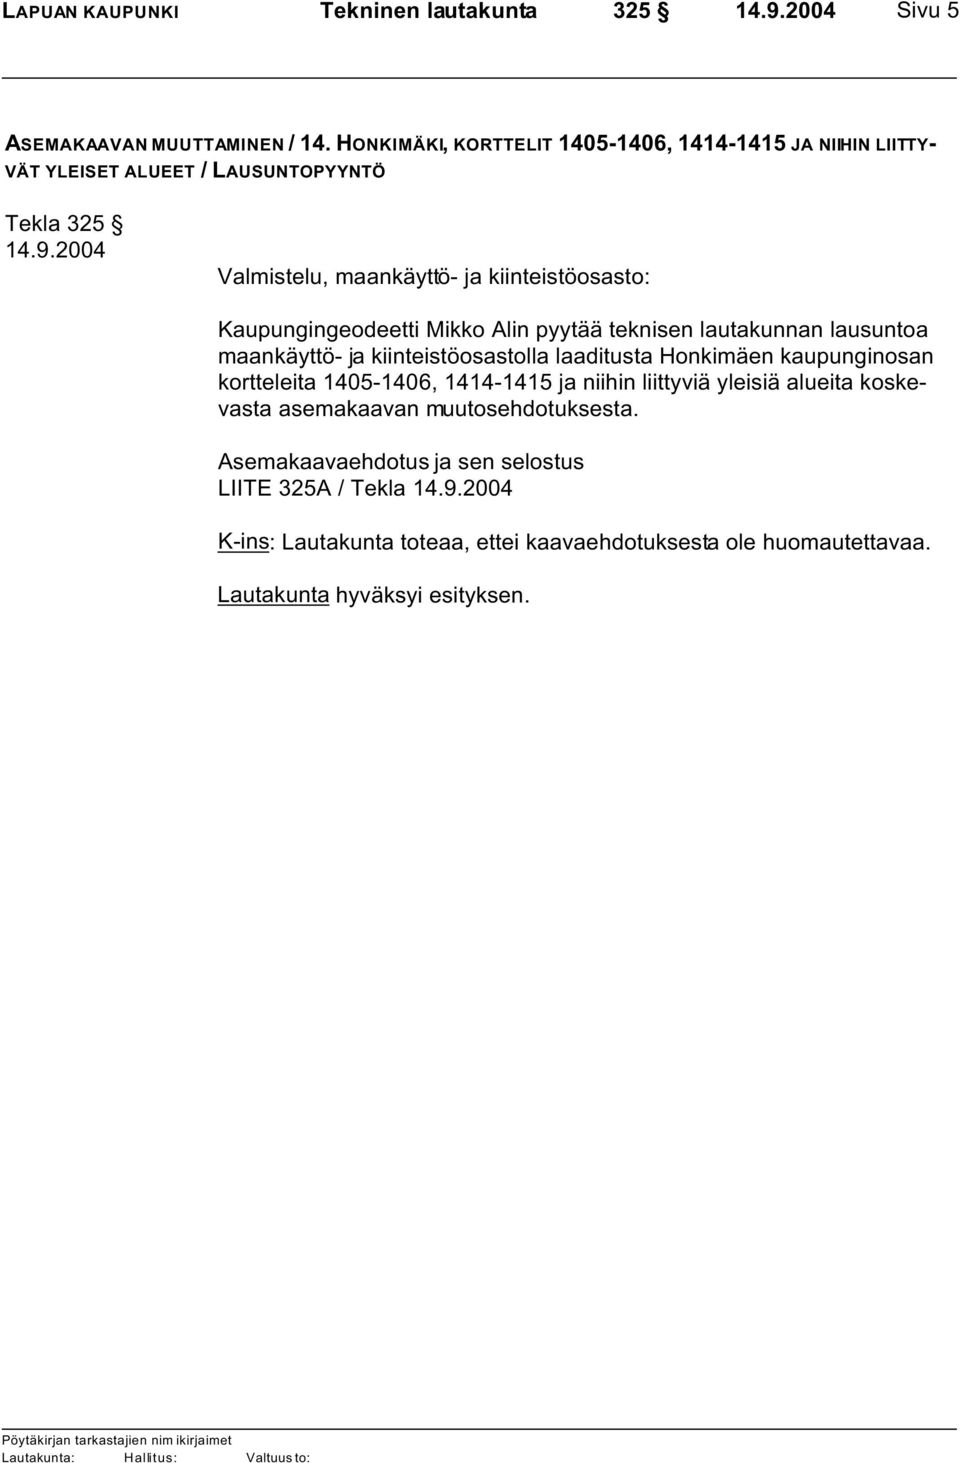 2004 Valmistelu, maankäyttö- ja kiinteistöosasto: Kaupungingeodeetti Mikko Alin pyytää teknisen lautakunnan lausuntoa maankäyttö- ja kiinteistöosastolla